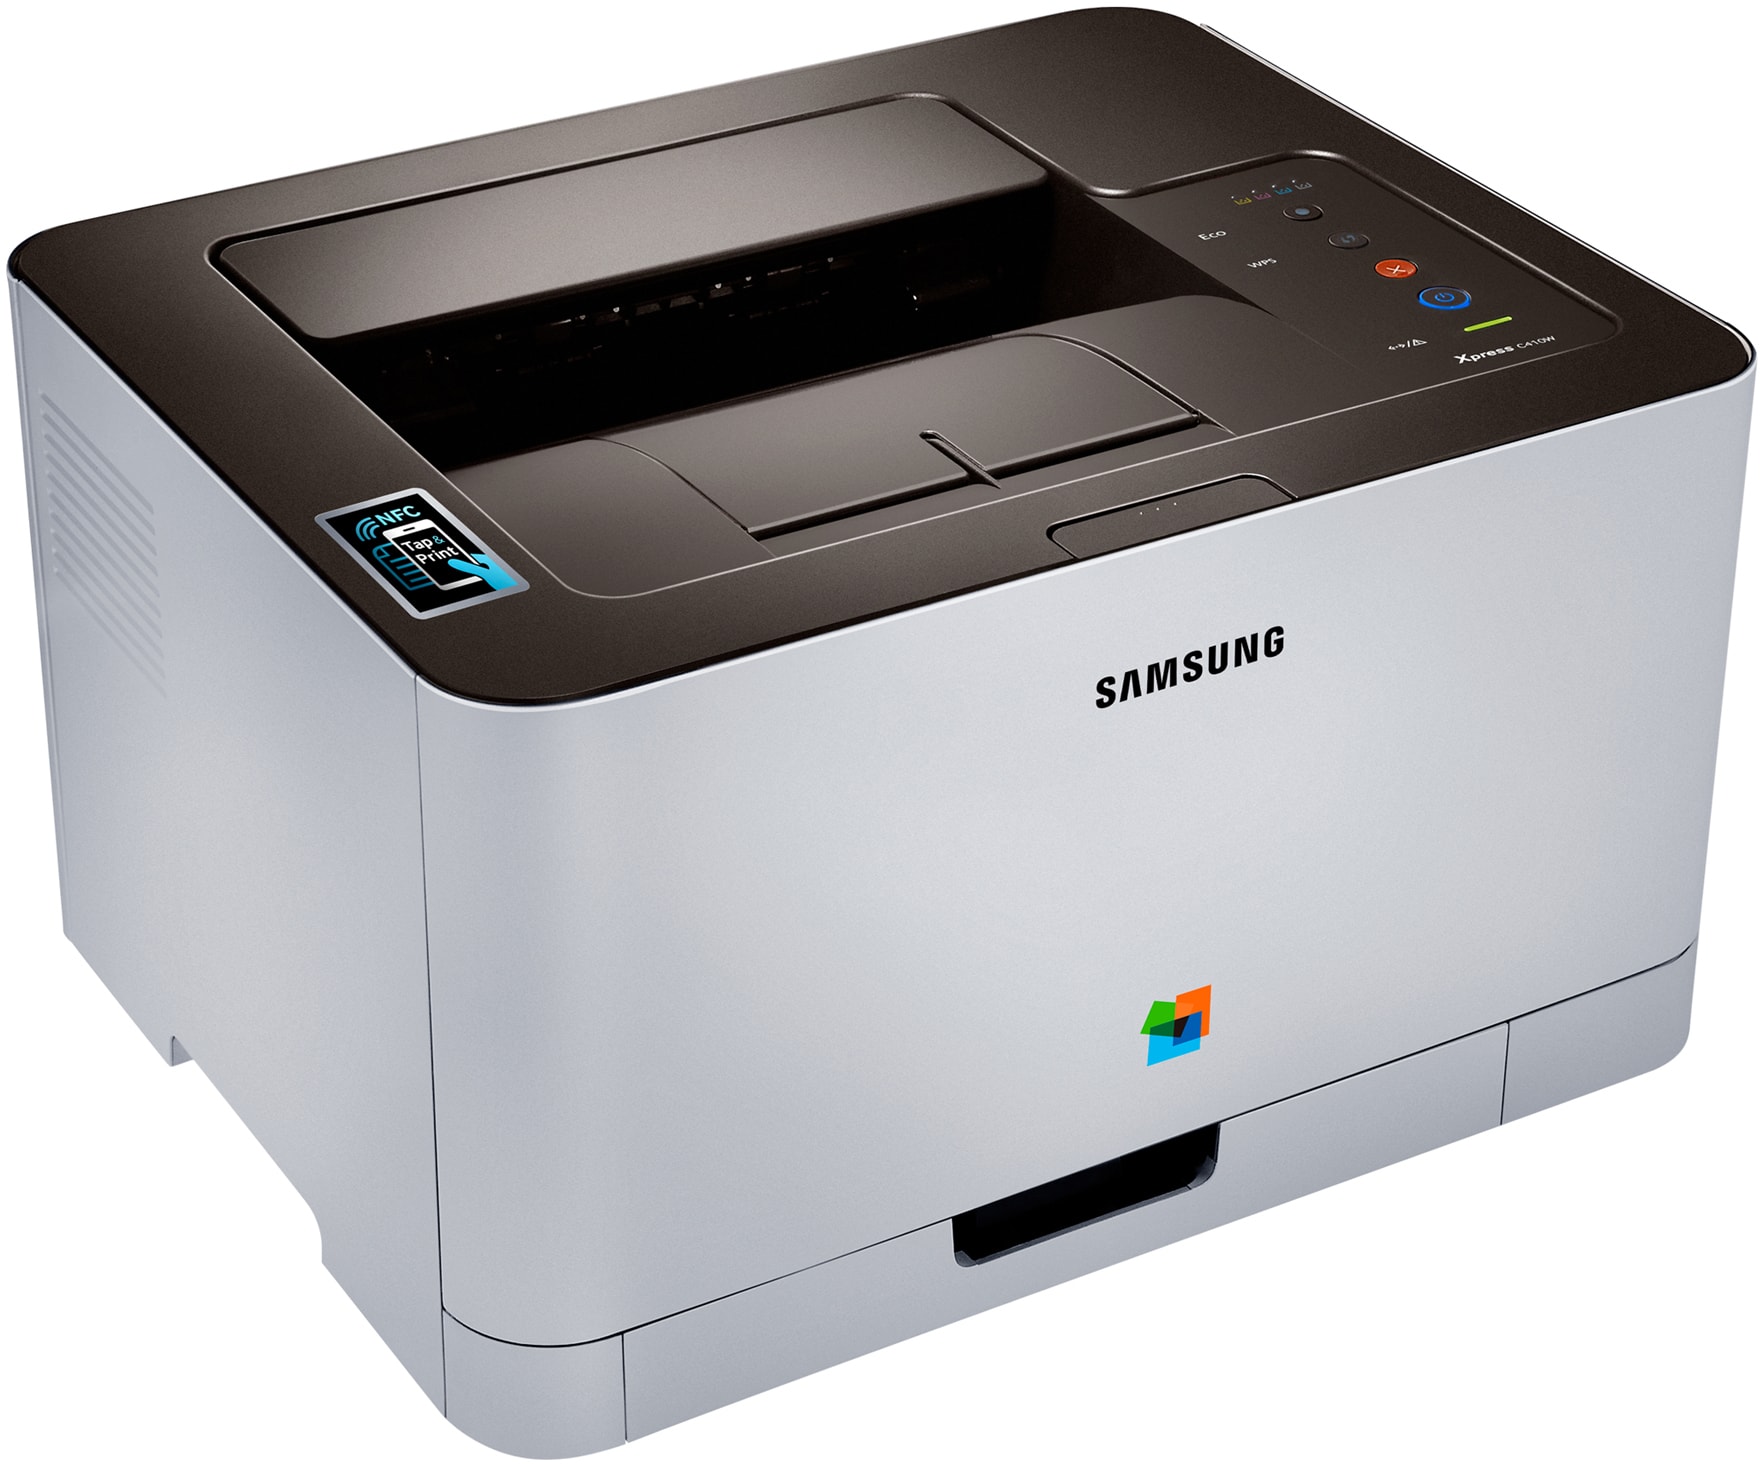 Samsung CLP-365. 3310 Самсунг принтер картридж. Samsung ml-3310. Принтер самсунг для плат. Ремонт принтеров самсунг недорого